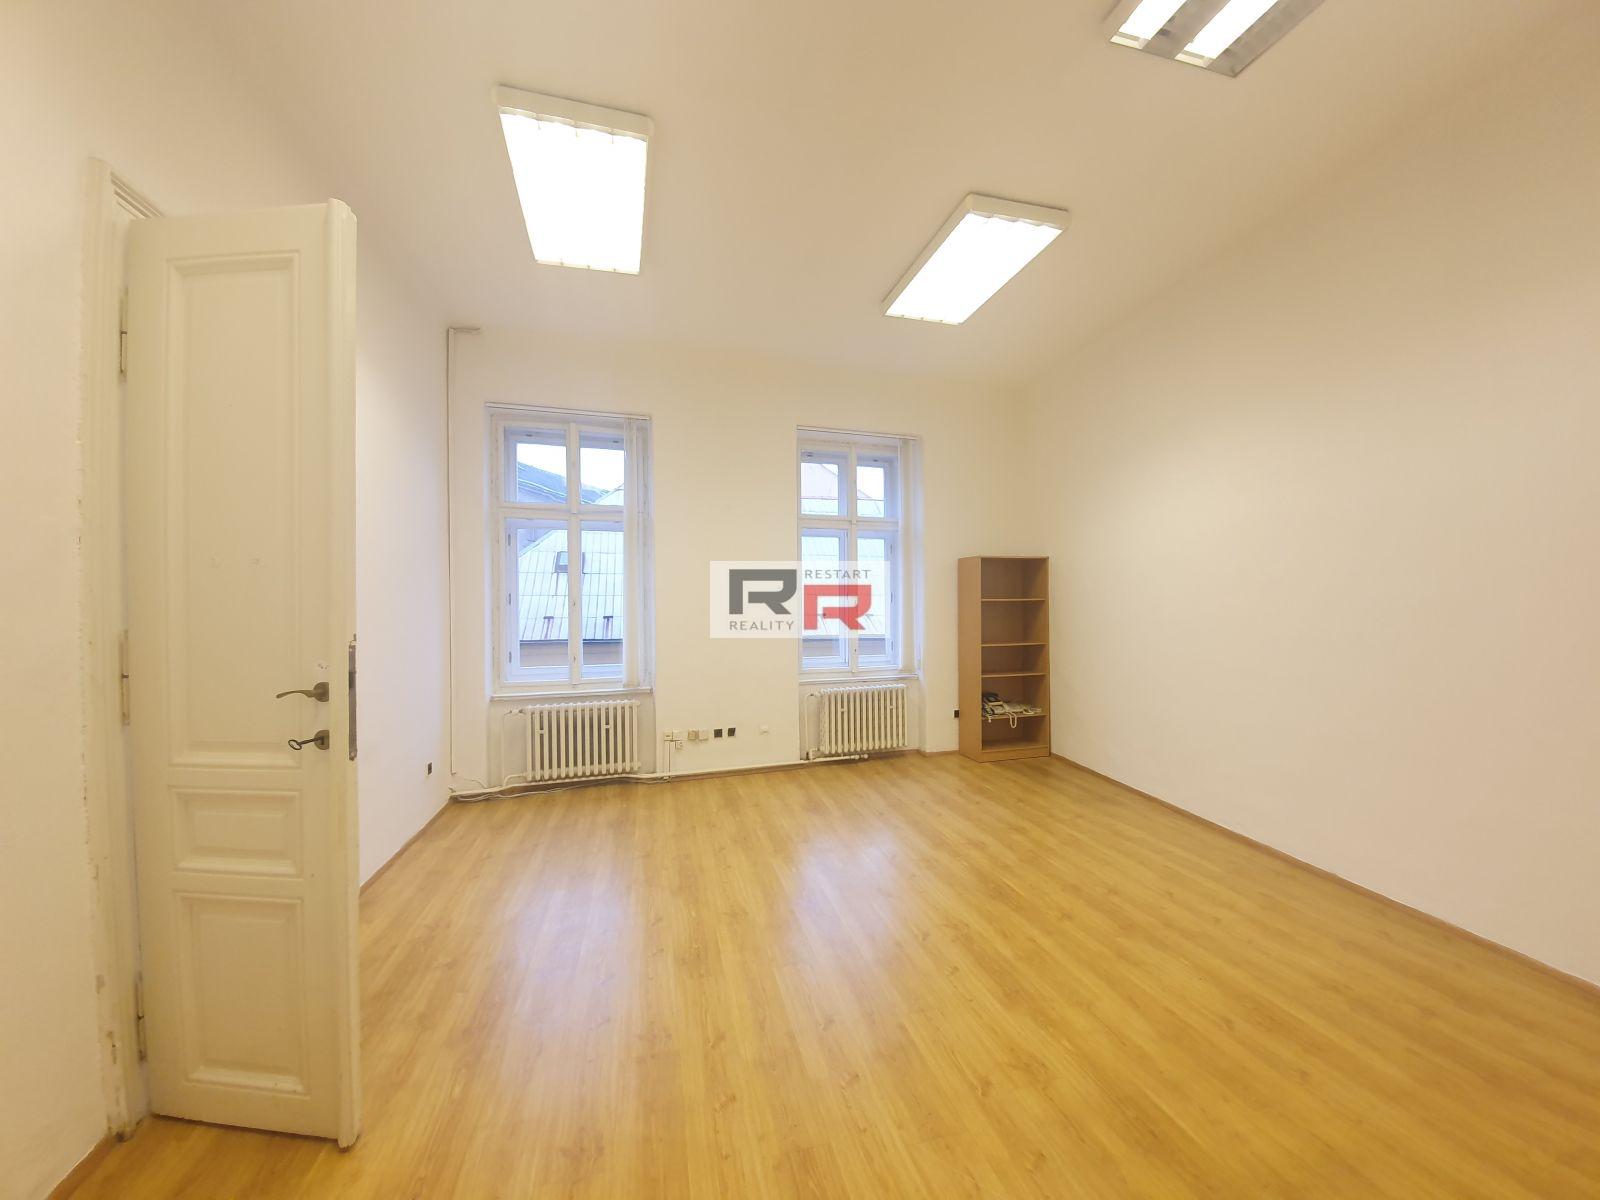 Pronájem kanceláře o velikosti 51,05m2 na tř. Svobody v  Olomouci